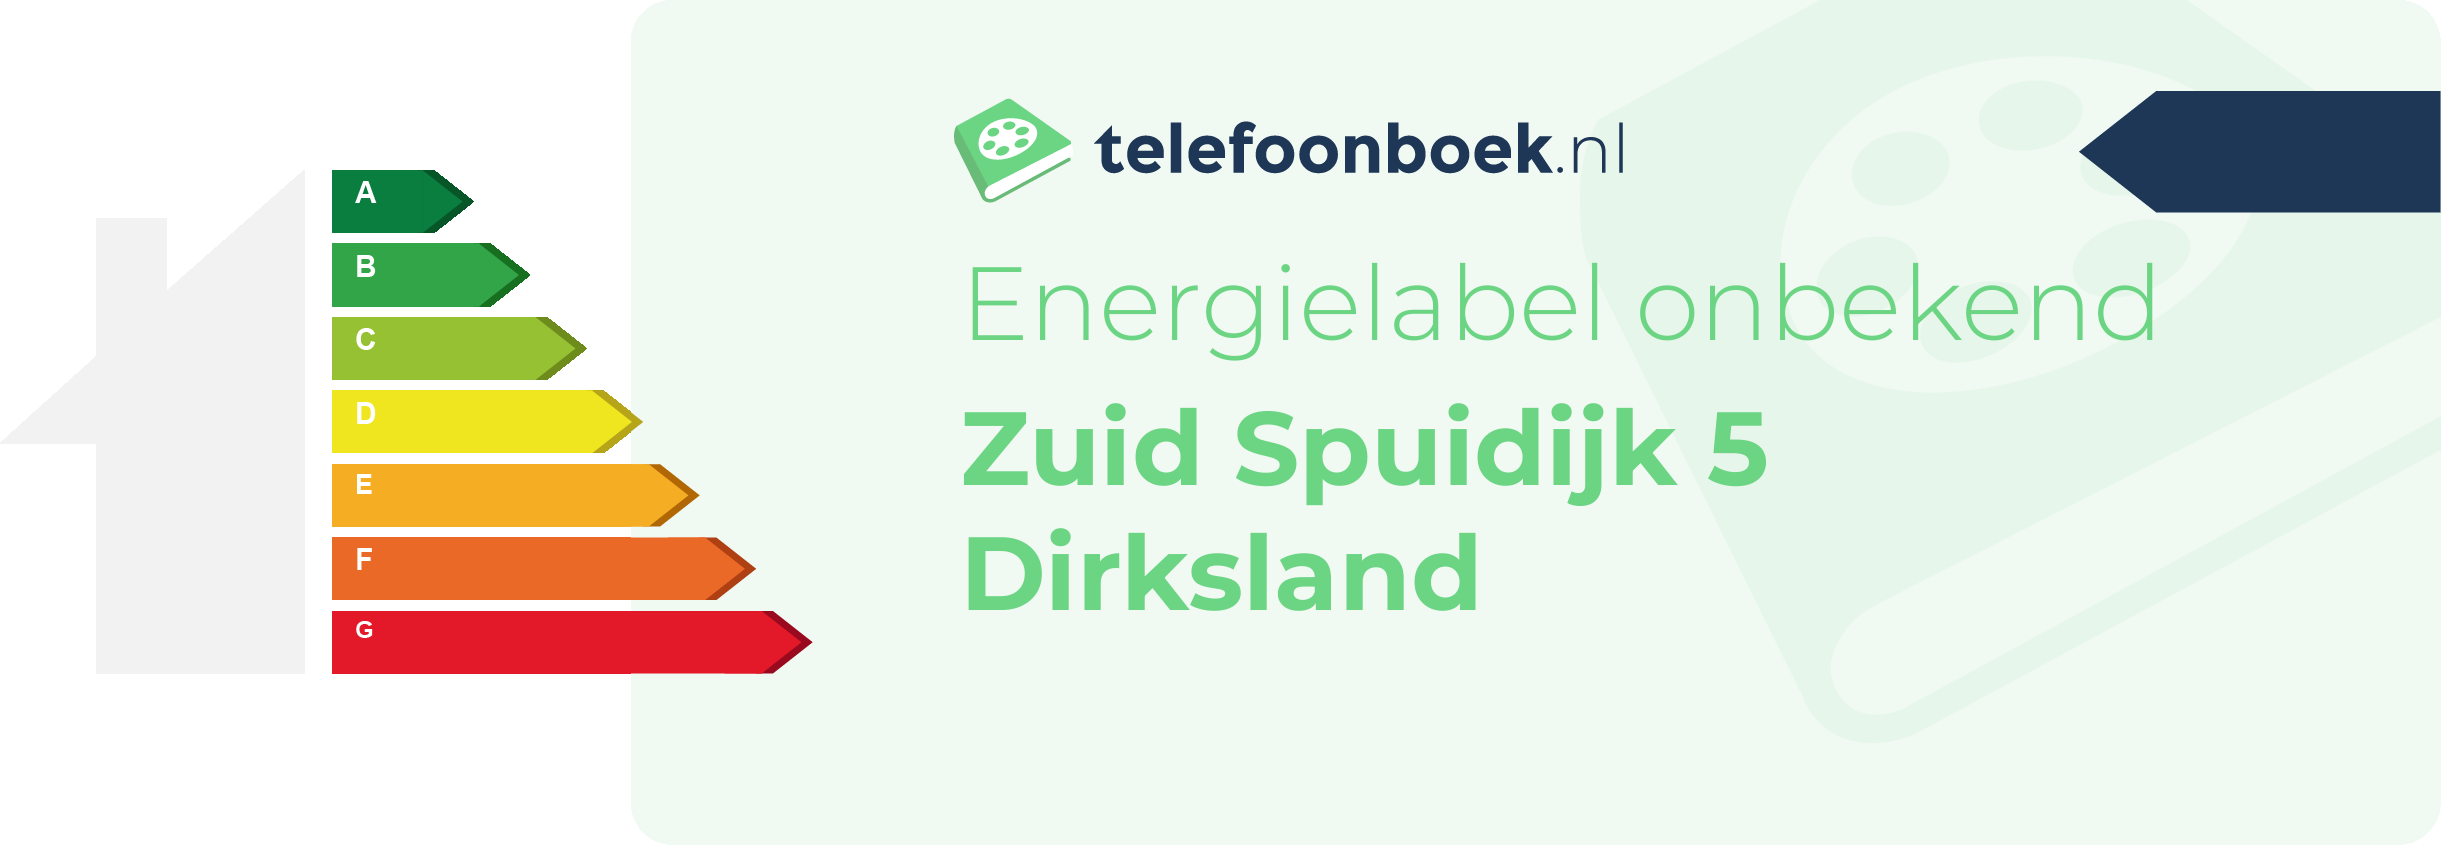 Energielabel Zuid Spuidijk 5 Dirksland